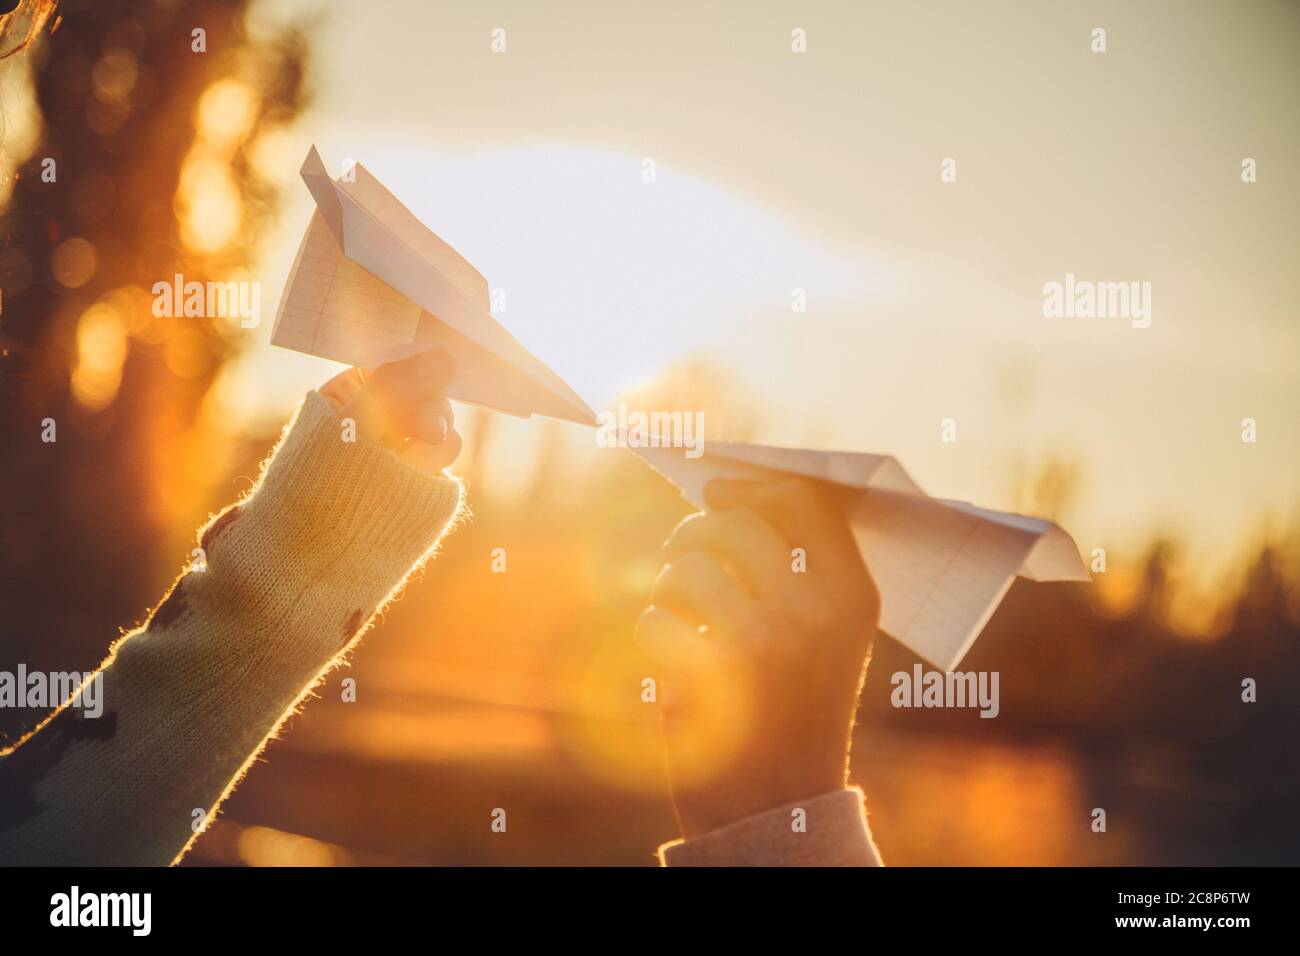 Zwei Papierflugzeuge in Händen, die sich bei Sonnenuntergang anguten. Junge Menschen halten Papierflugzeuge, Liebe, Beziehungen Konzept Stockfoto